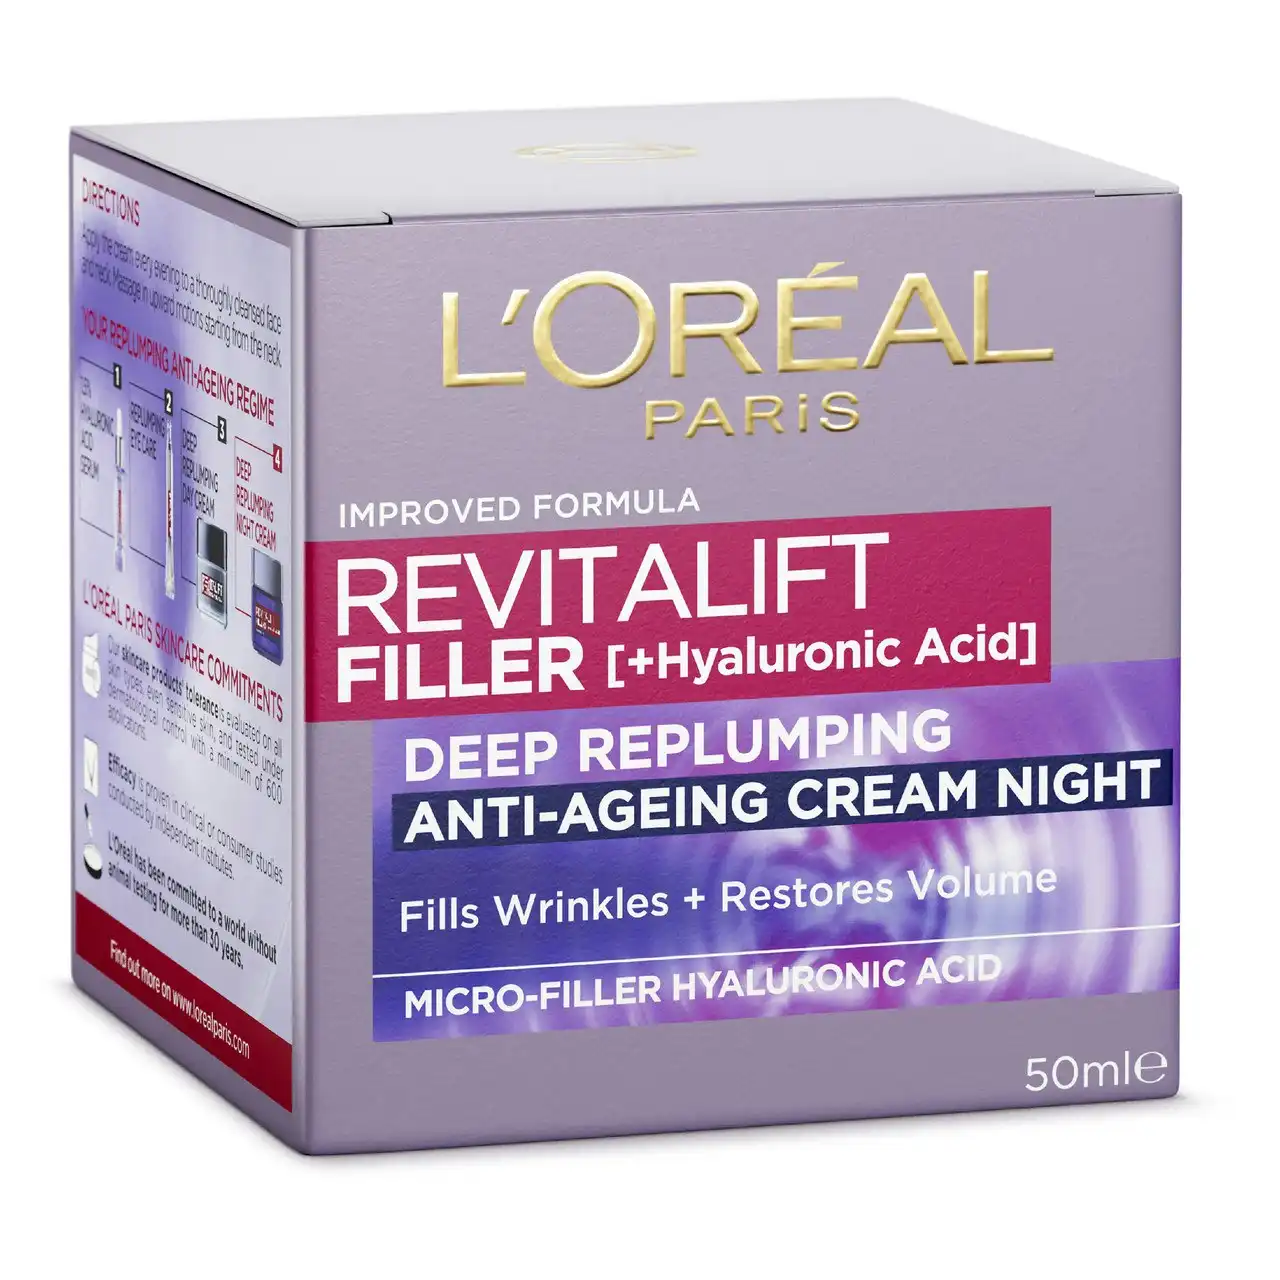 L'Oreal Paris Revitalift Filler [+Hyaluronic Acid] Replumping Night Moisturiser